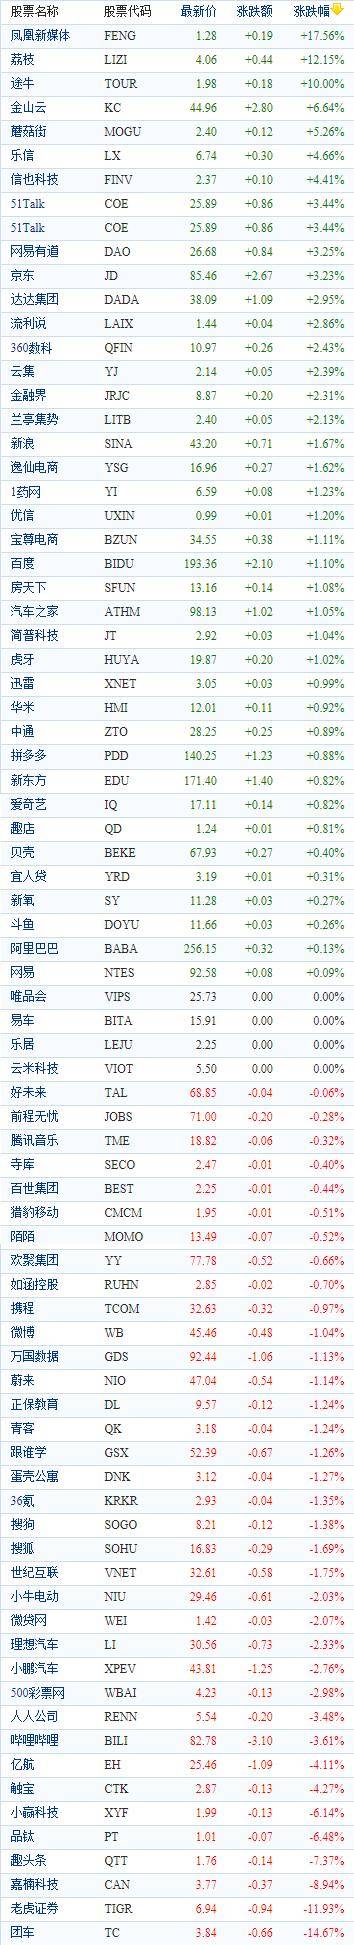 中国概念股周三收盘涨跌 荔枝上涨超过12%